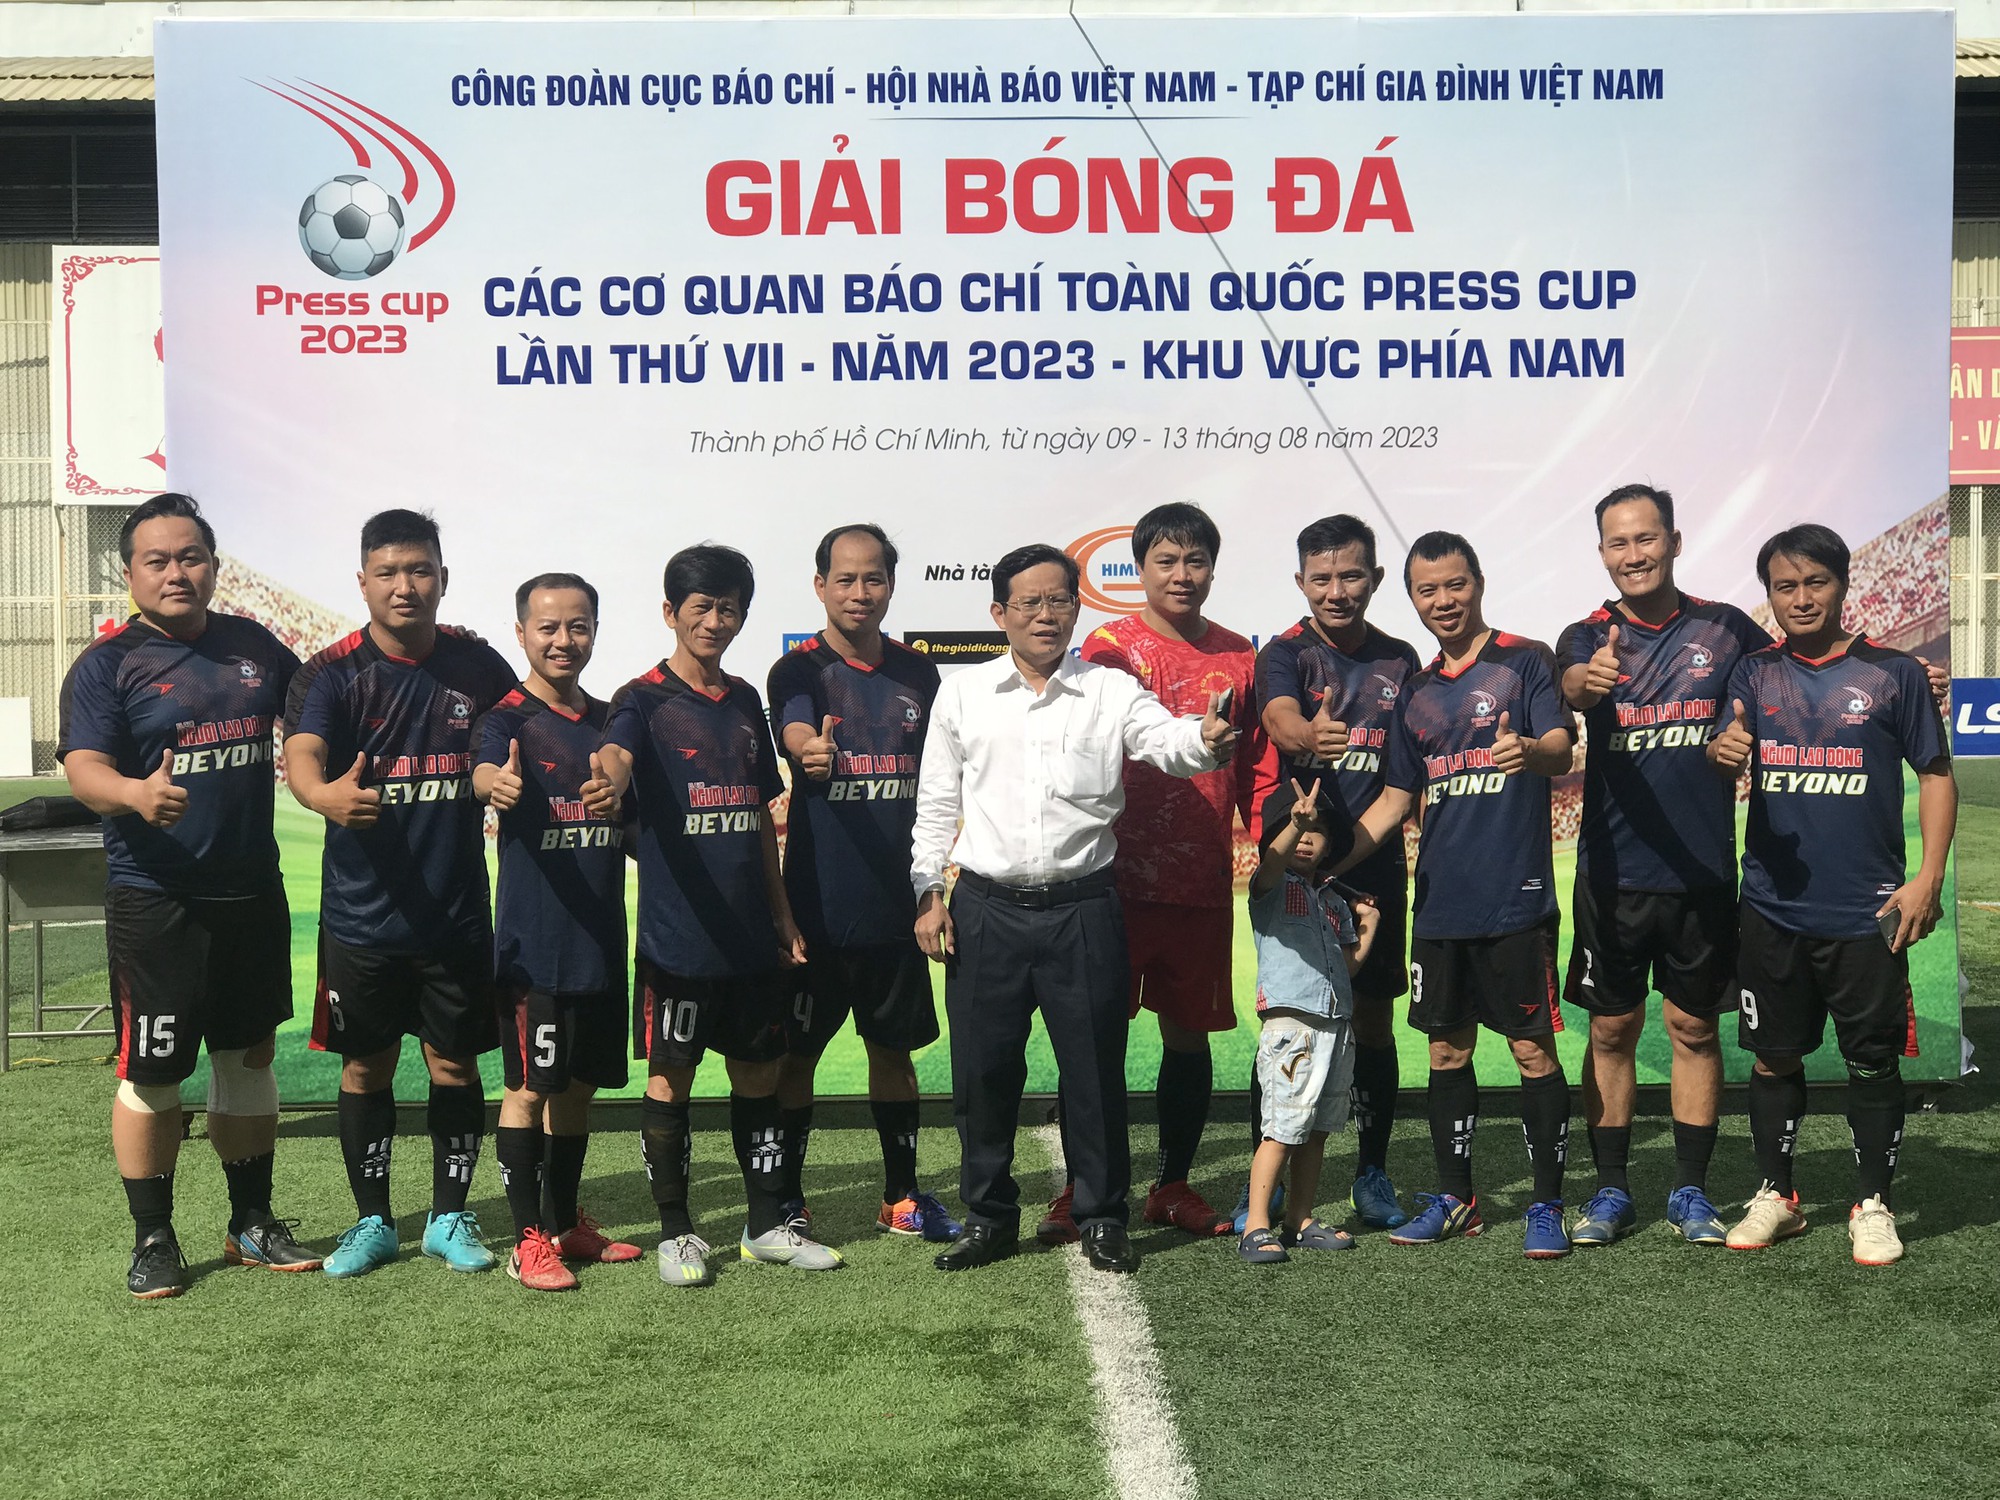 Đội báo Người Lao Động thắng trận khai mạc Giải bóng đá Press Cup 2023 - Ảnh 2.